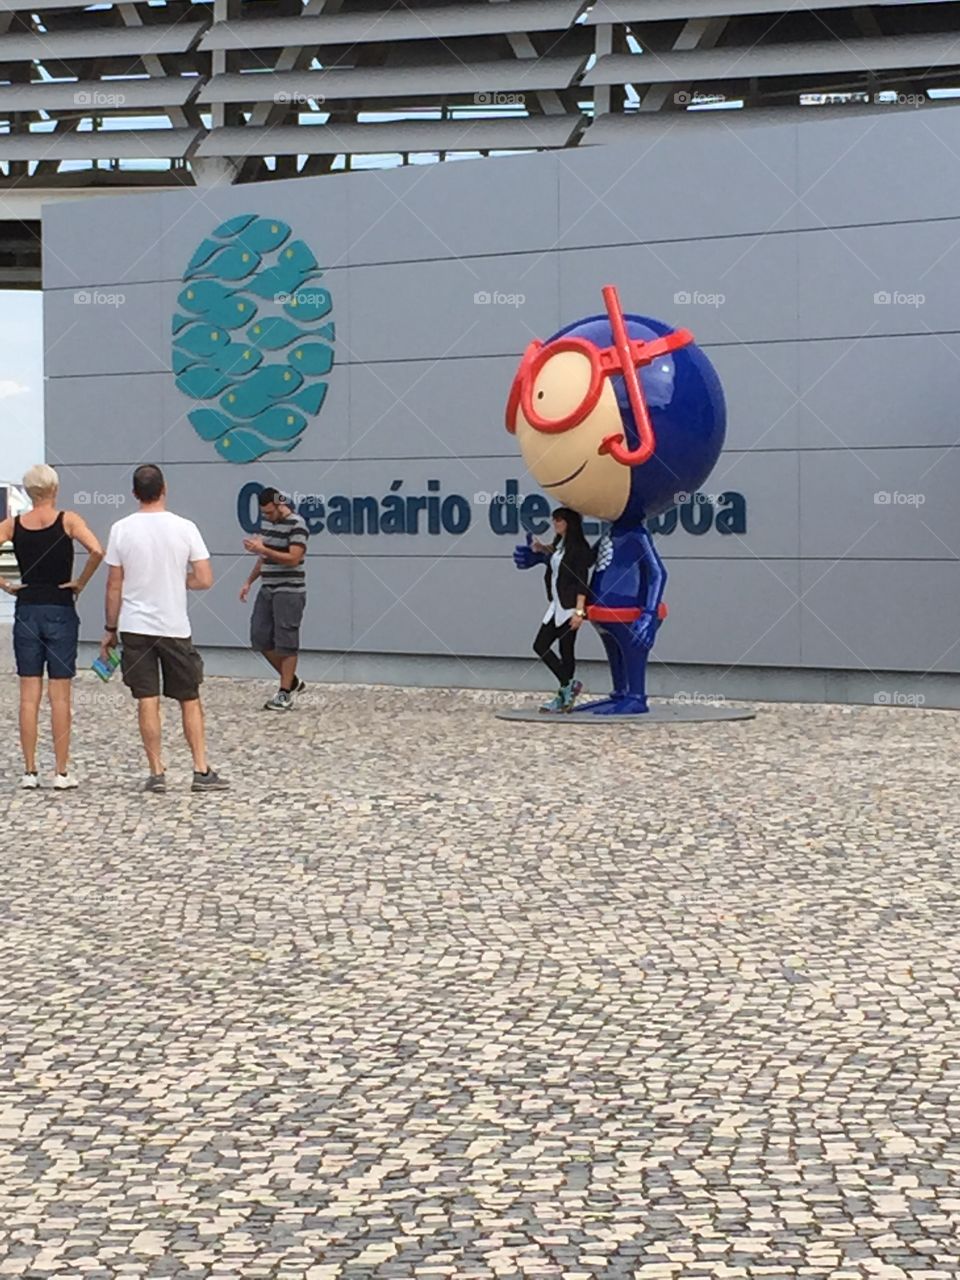 Oceanarium at Lisbon 